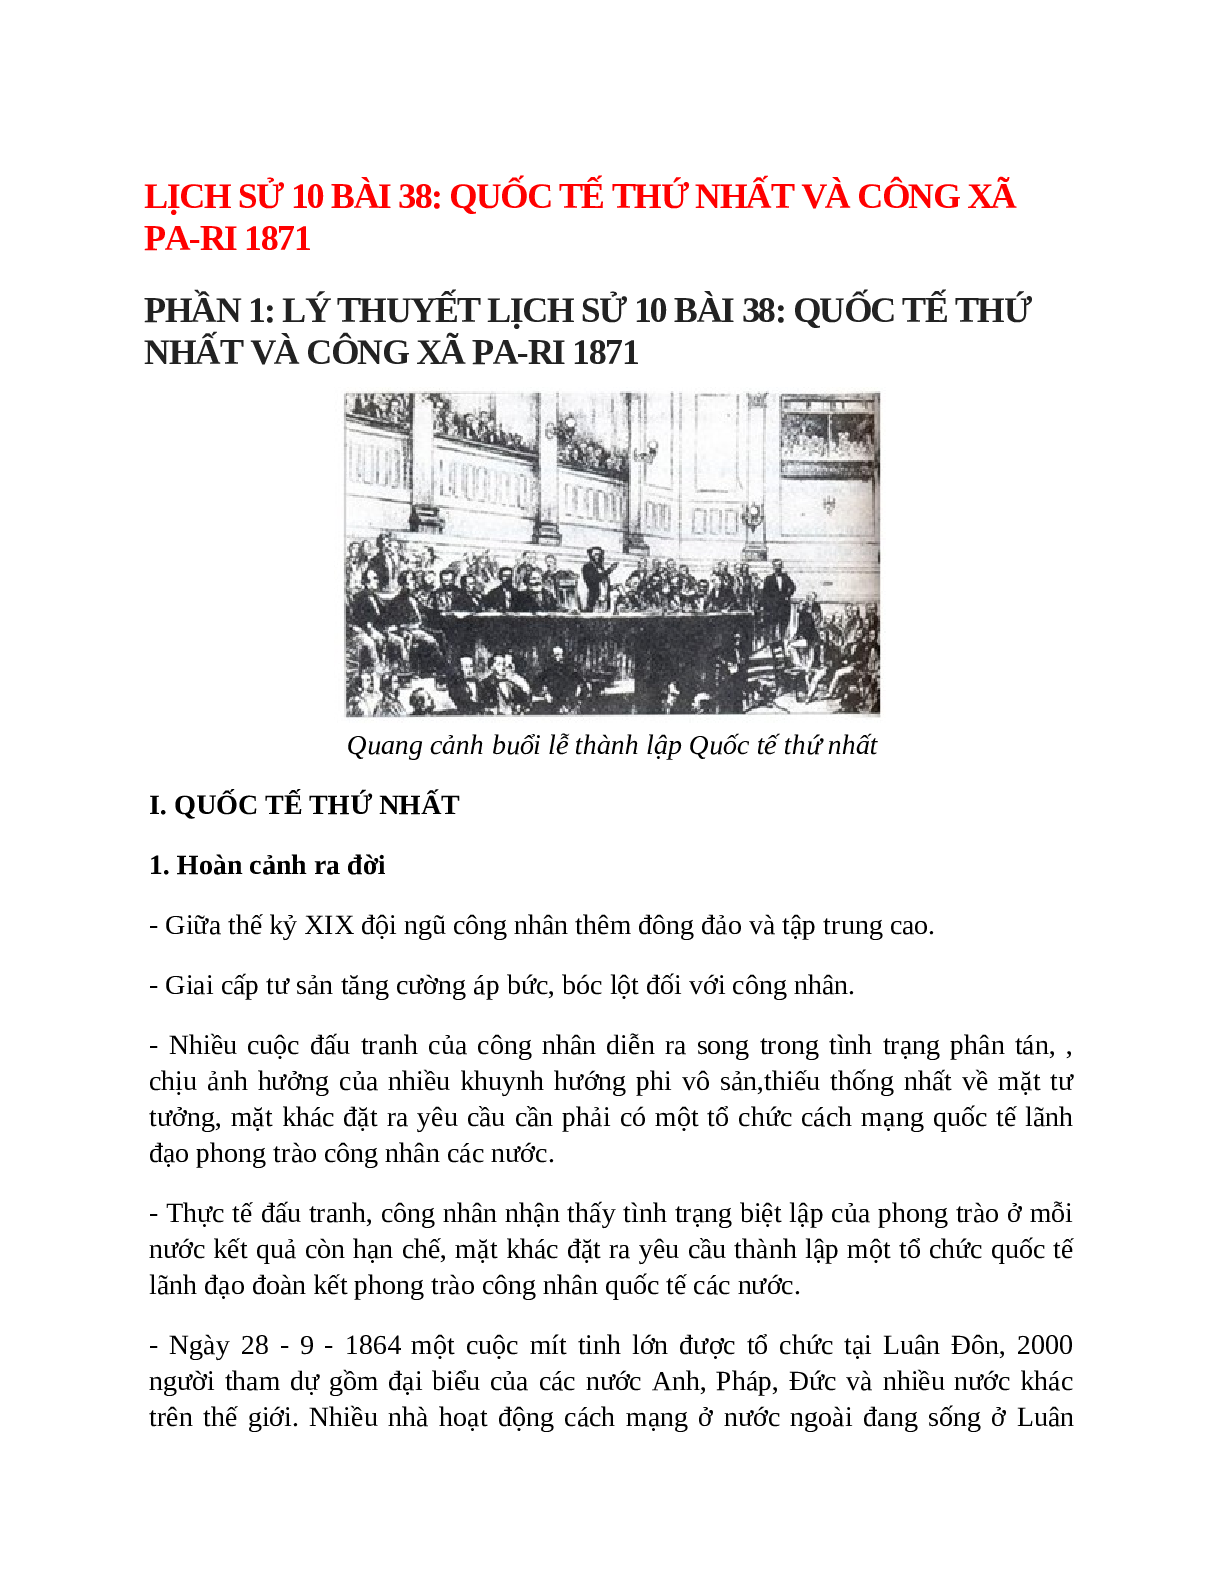 Lịch Sử 10 Bài 38 (Lý thuyết và trắc nghiệm): Quốc tế thứ nhất và công xã Pa-ri 1871 (trang 1)